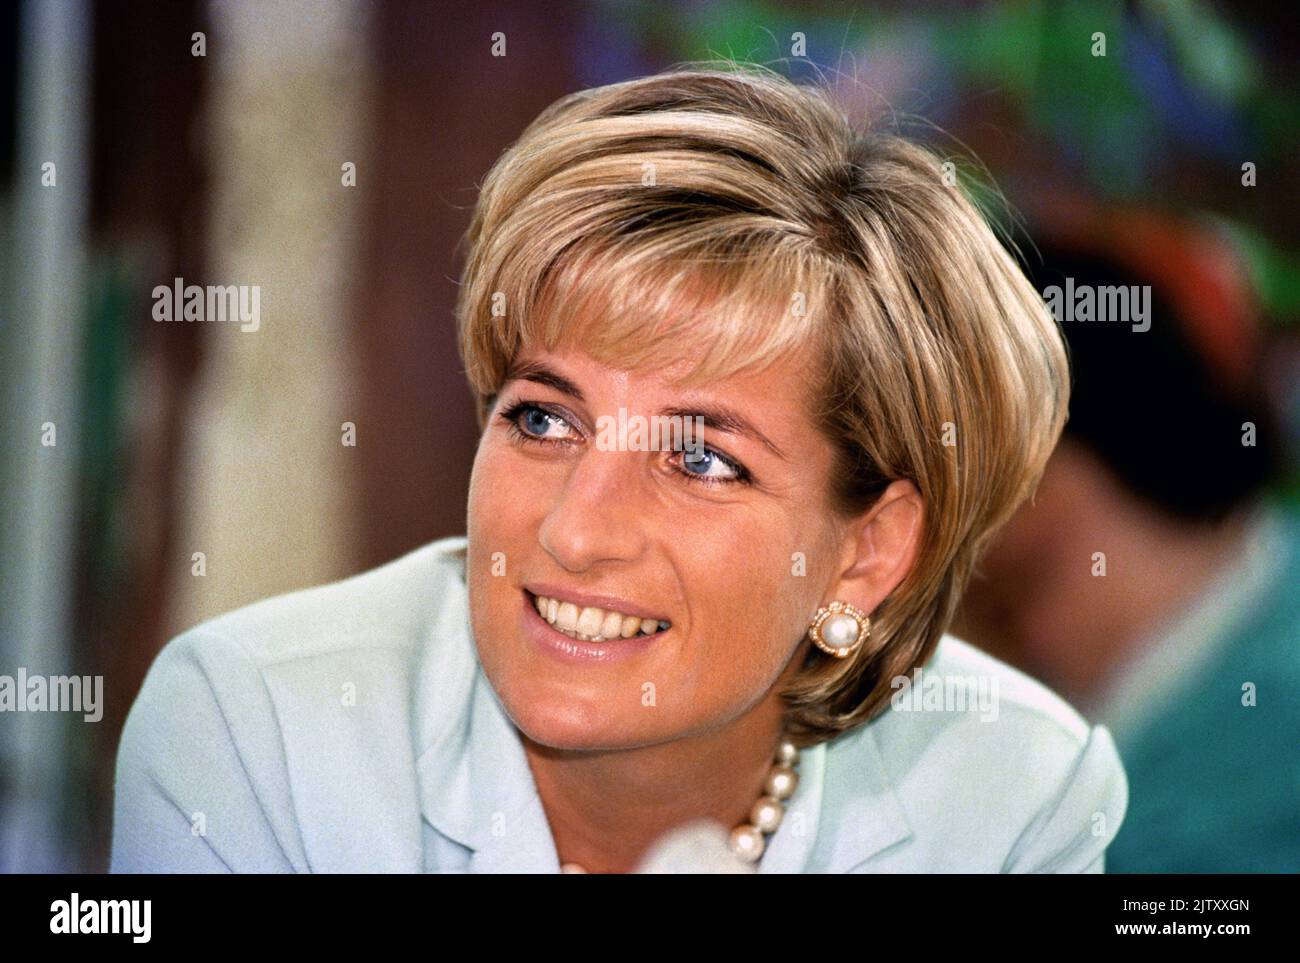 Foto del expediente del 27/5/1997 de Diana, Princesa de Gales. La BBC ha donado £1,42 millones de dólares procedentes de las ventas de la entrevista Panorama de 1995 con la princesa, para ser compartidos a partes iguales entre siete organizaciones benéficas vinculadas con ella, dijo la emisora. Fecha de emisión: Viernes 2 de Septiembre, 2022. Foto de stock